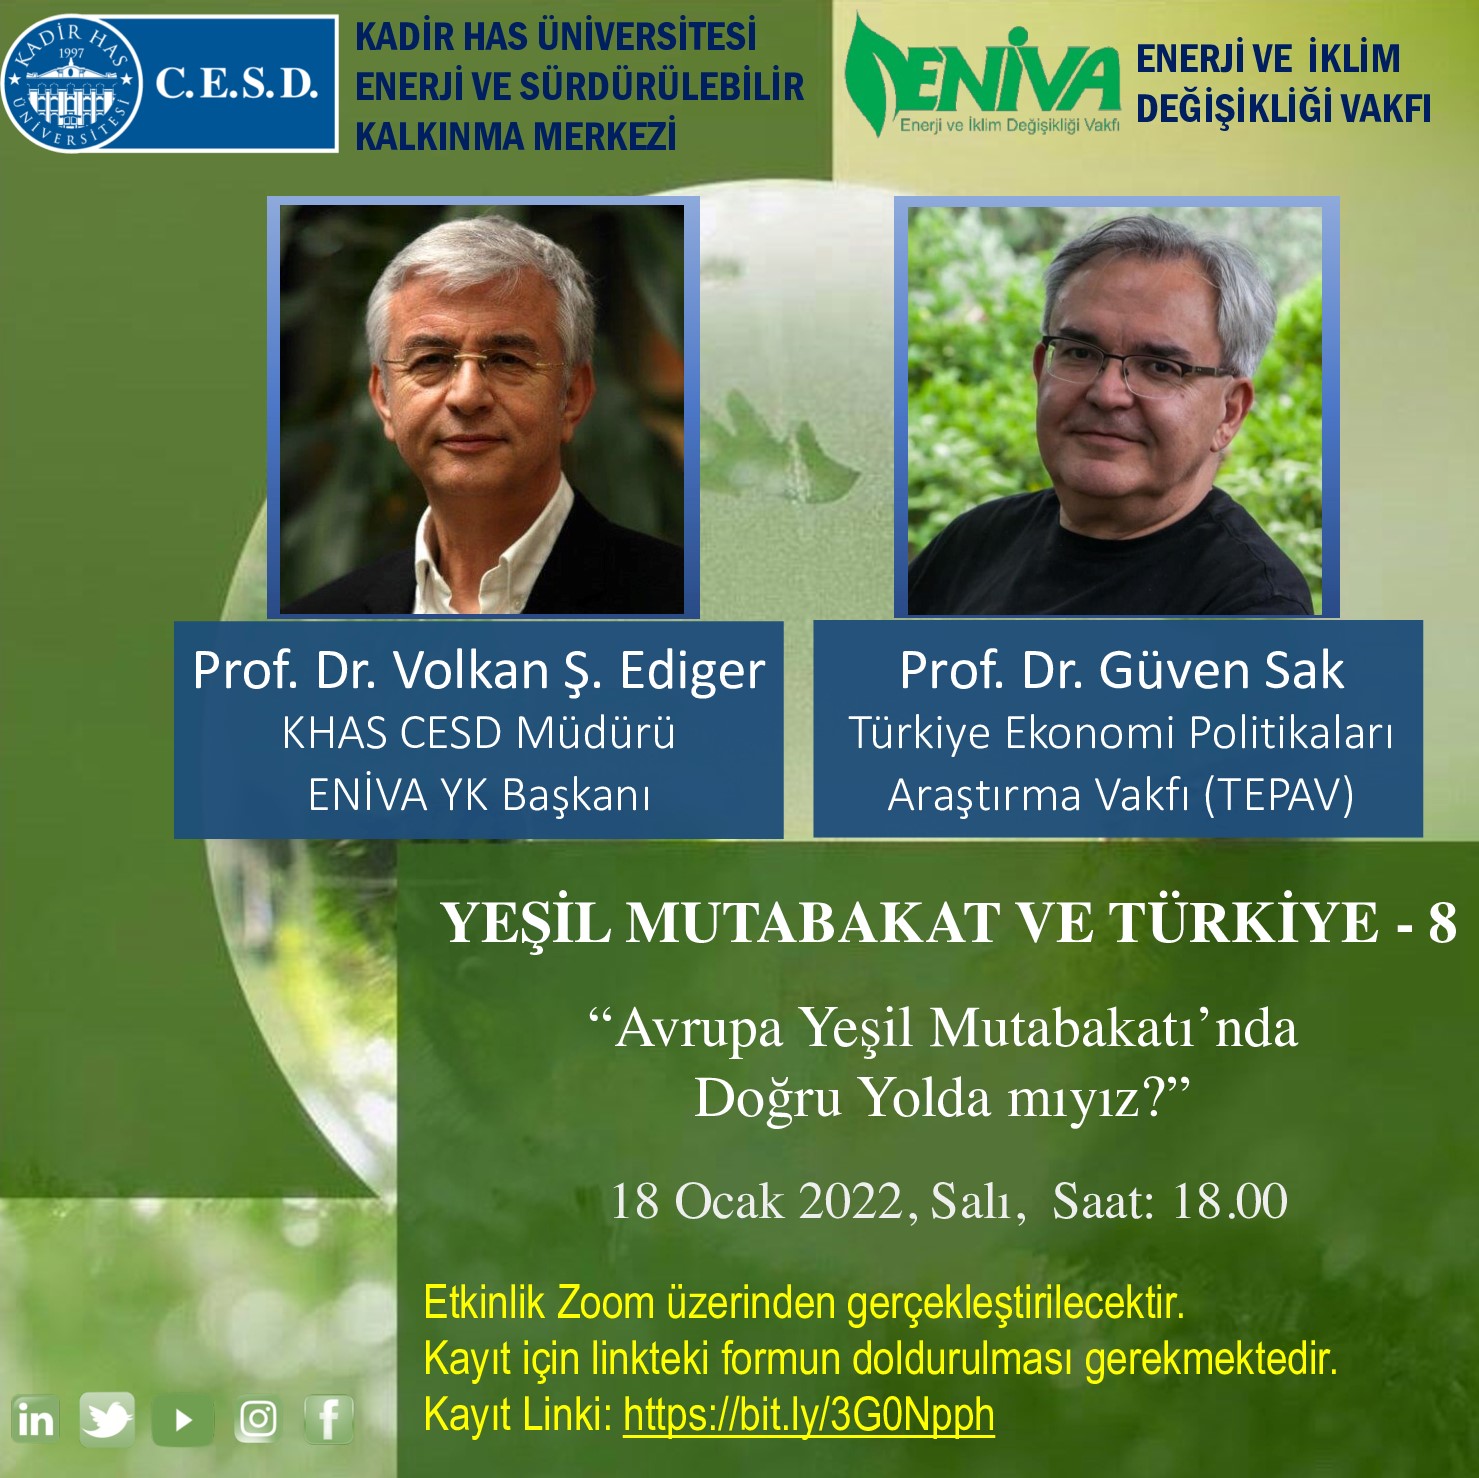 Yeşil Mutabakat ve Türkiye-8: Prof. Dr. Güven Sak